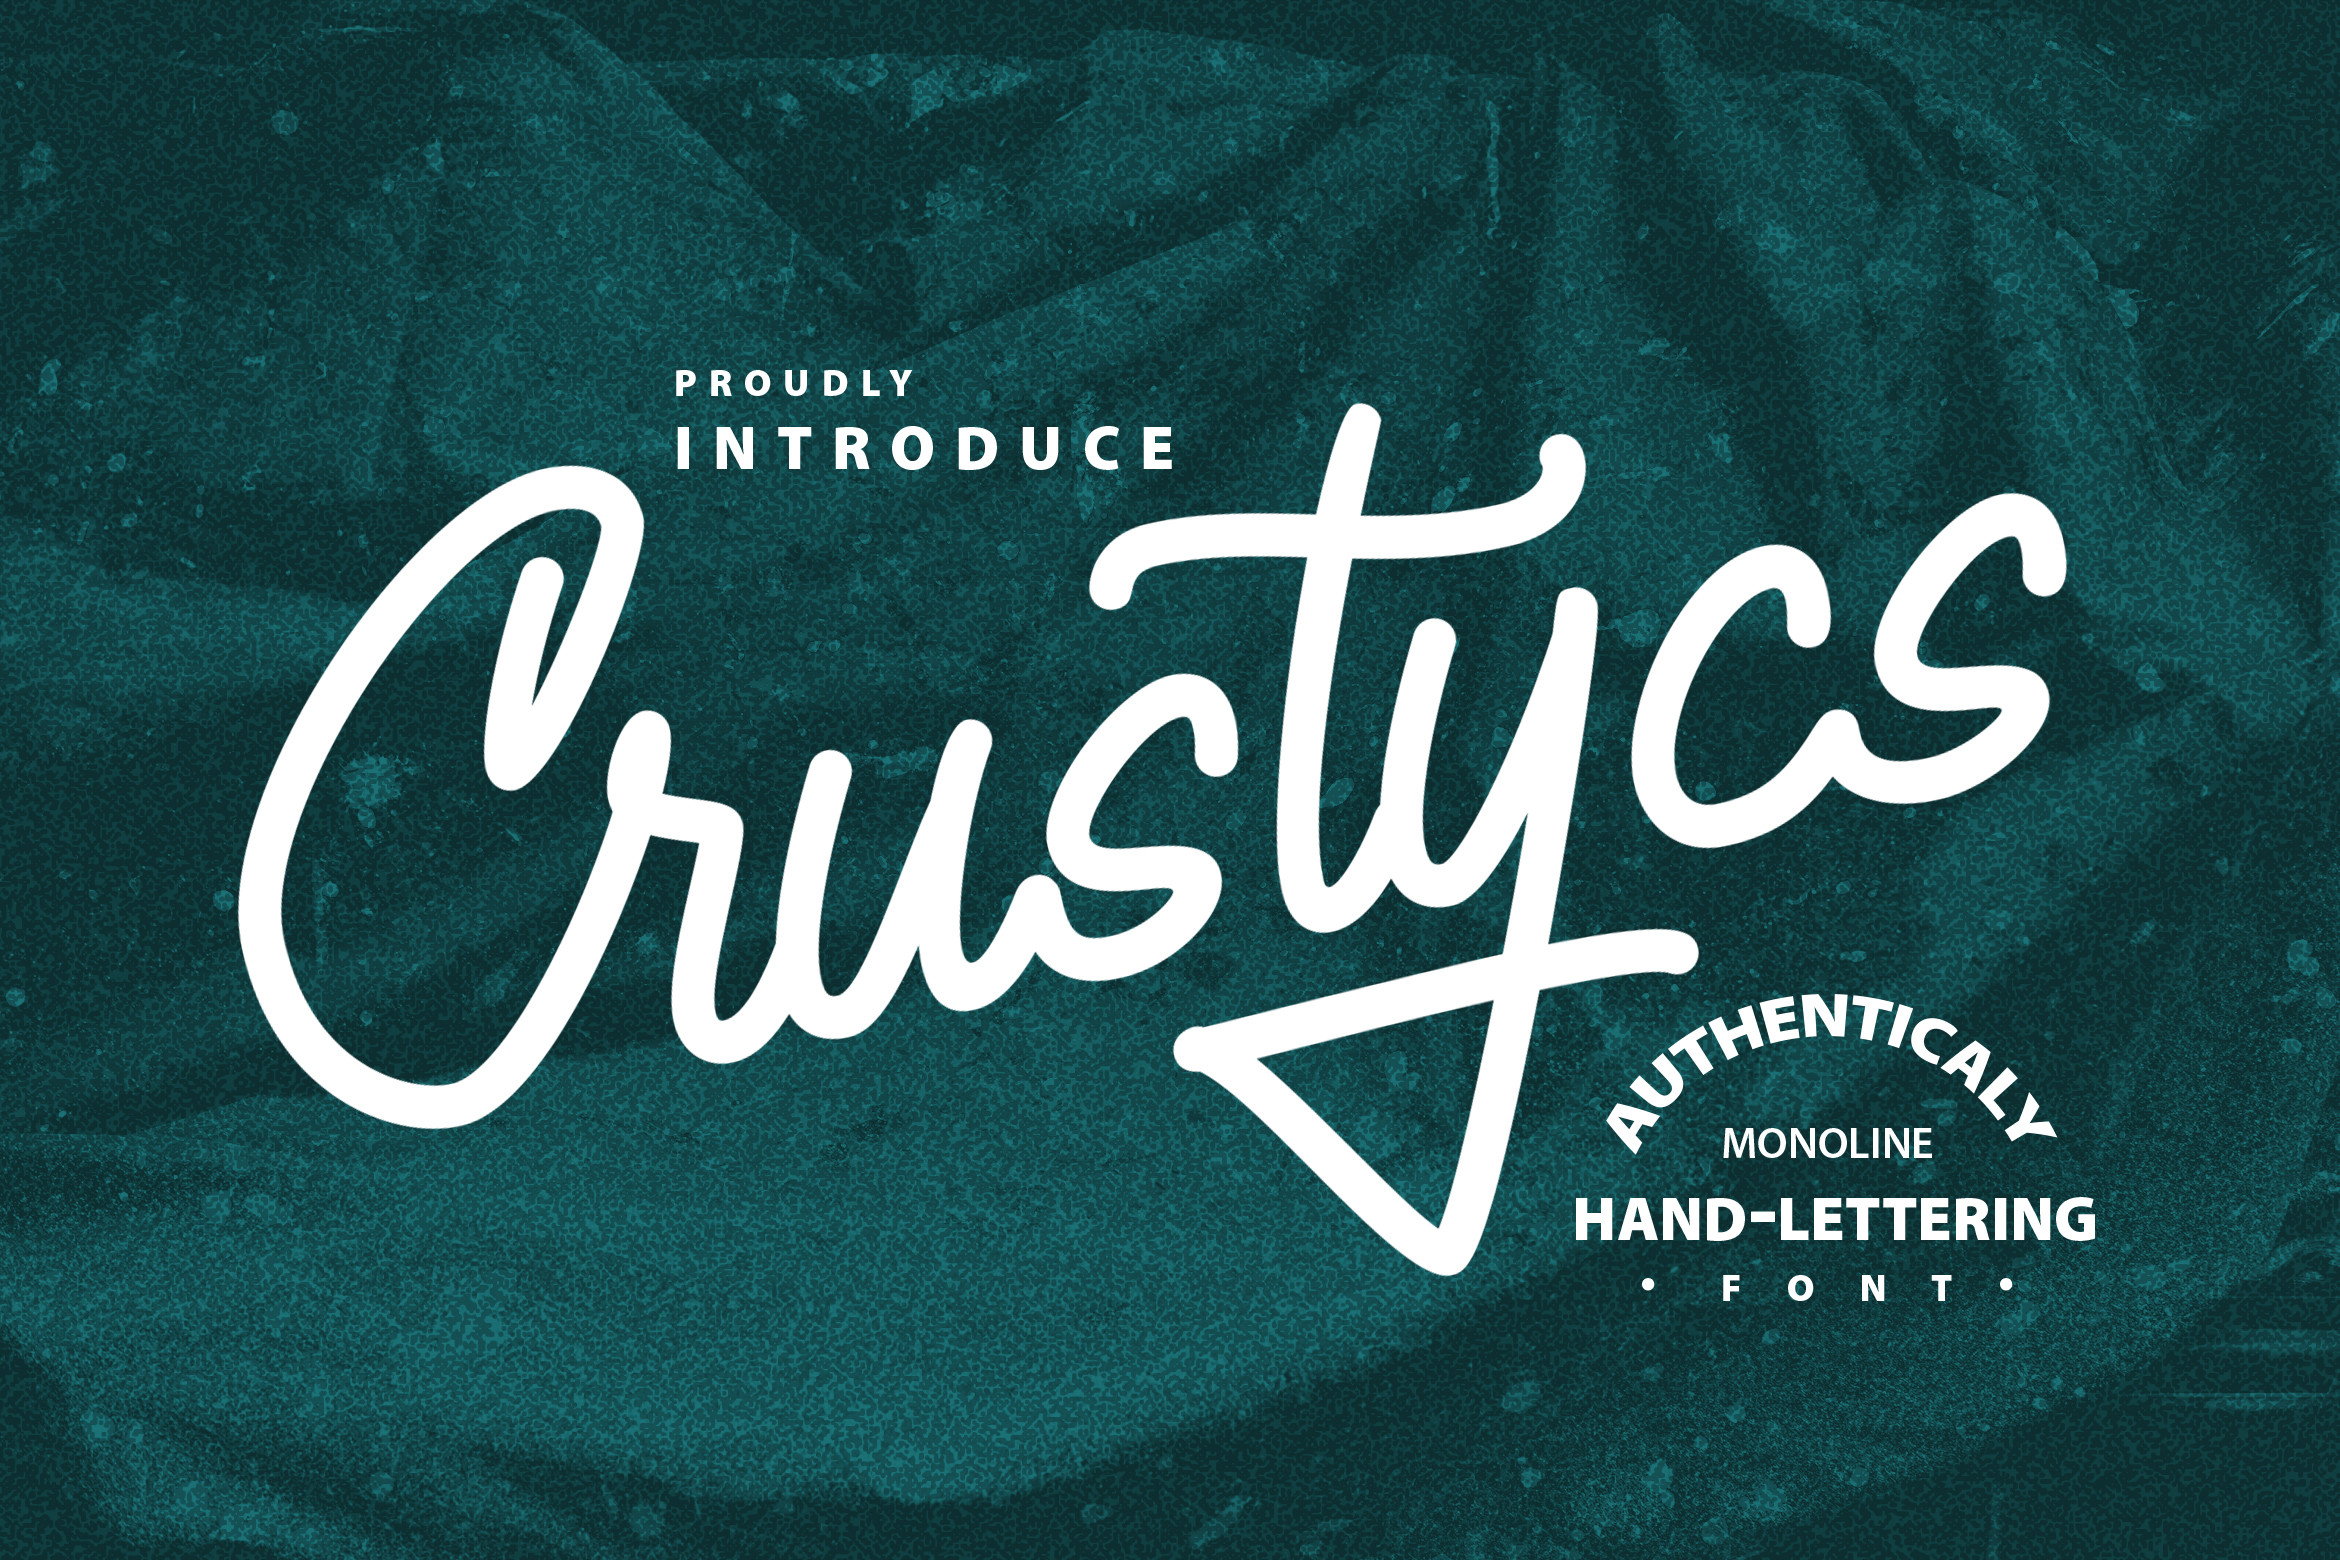 Crustycs Font.jpg